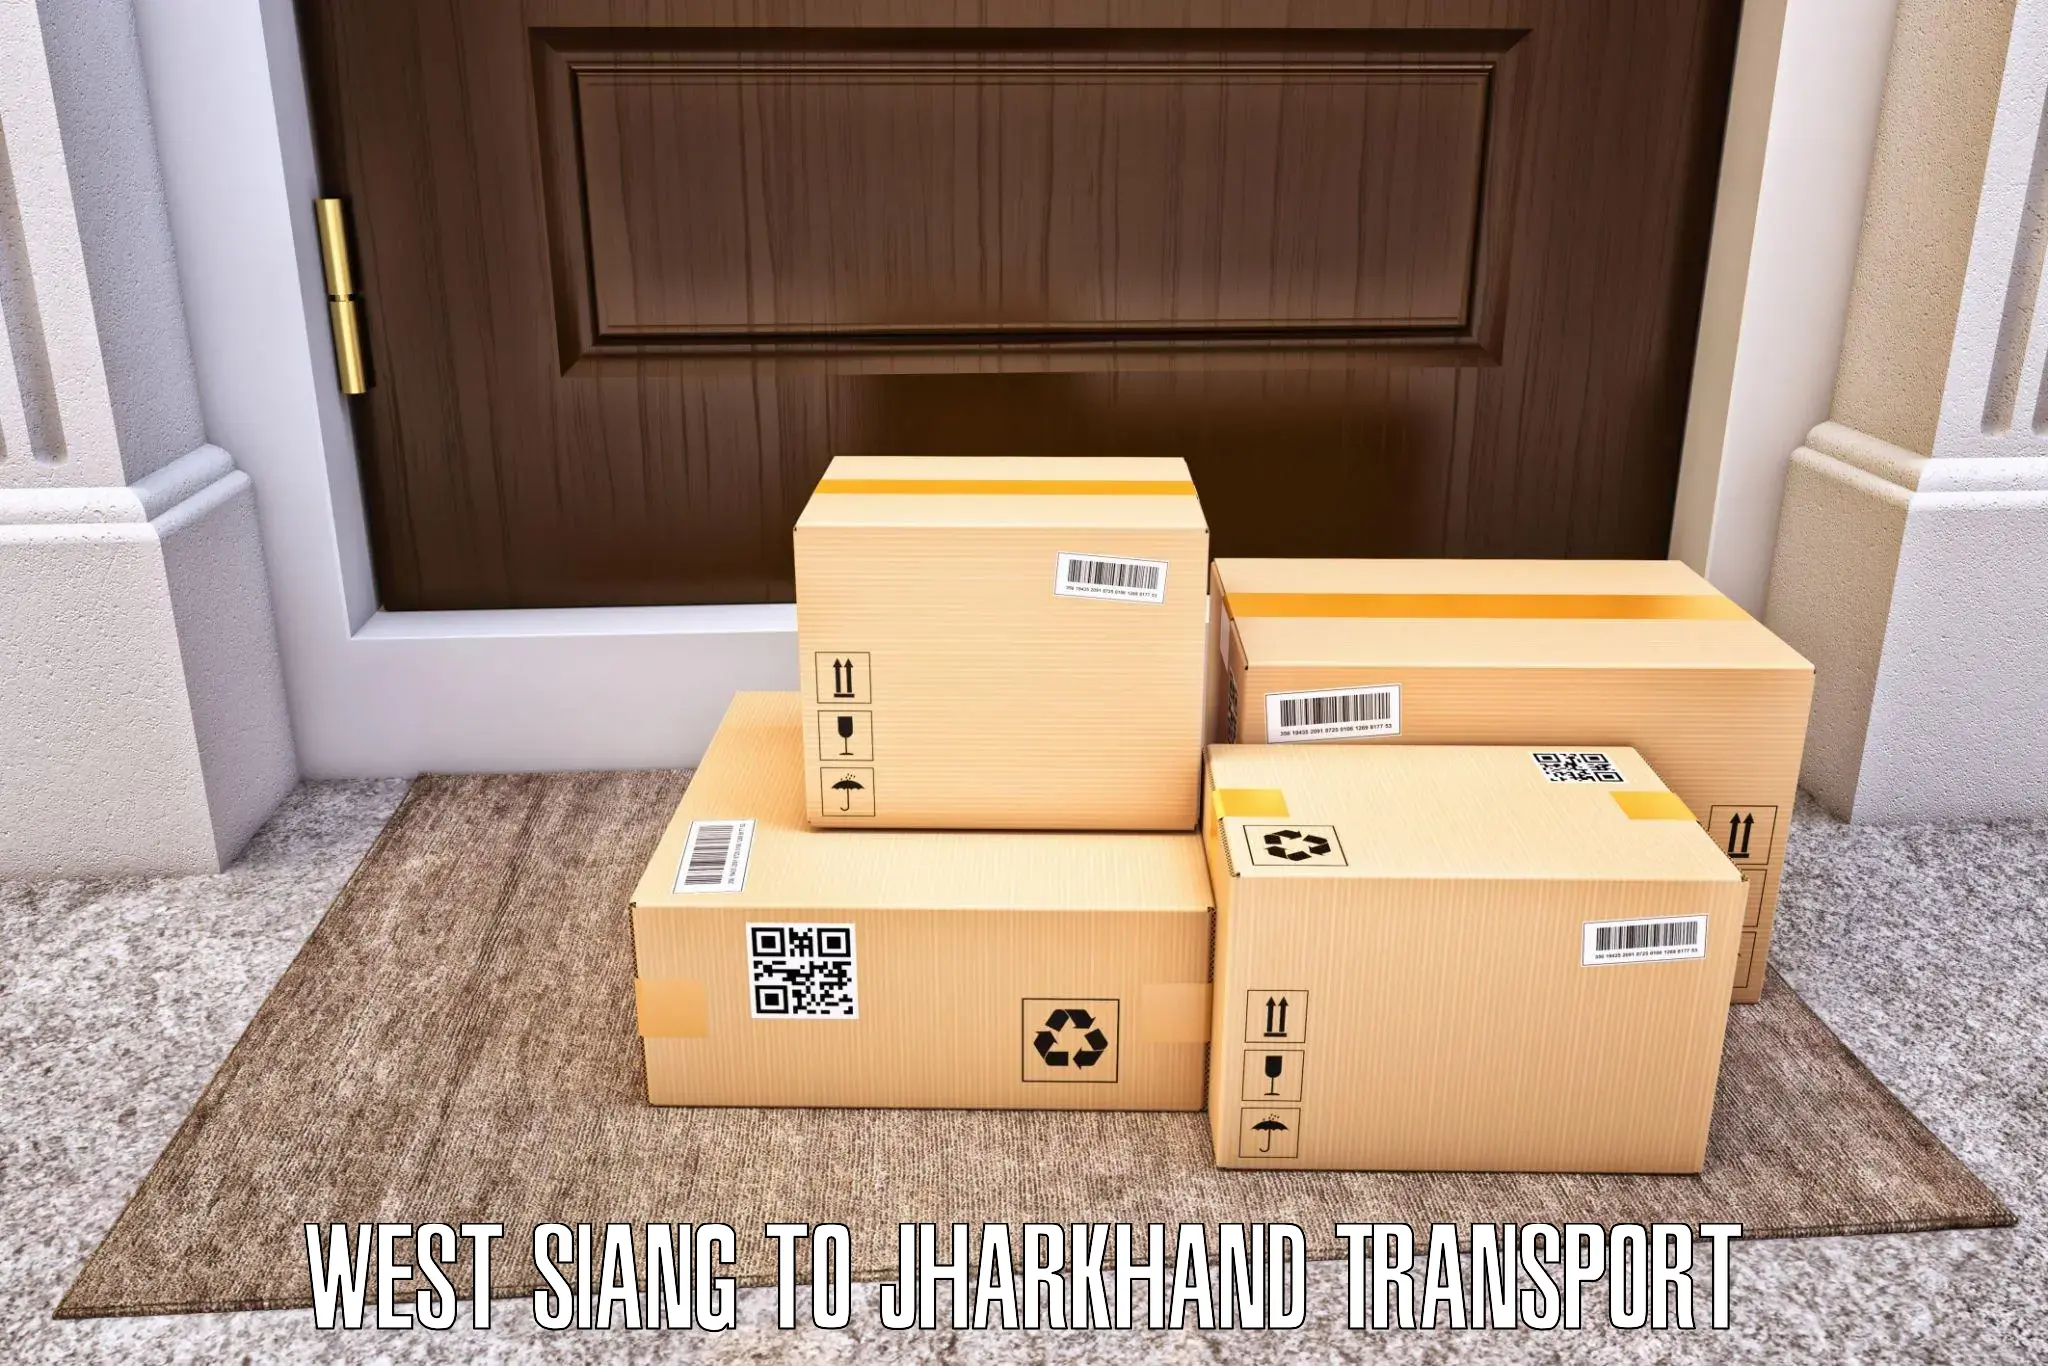 Shipping partner West Siang to Lohardaga